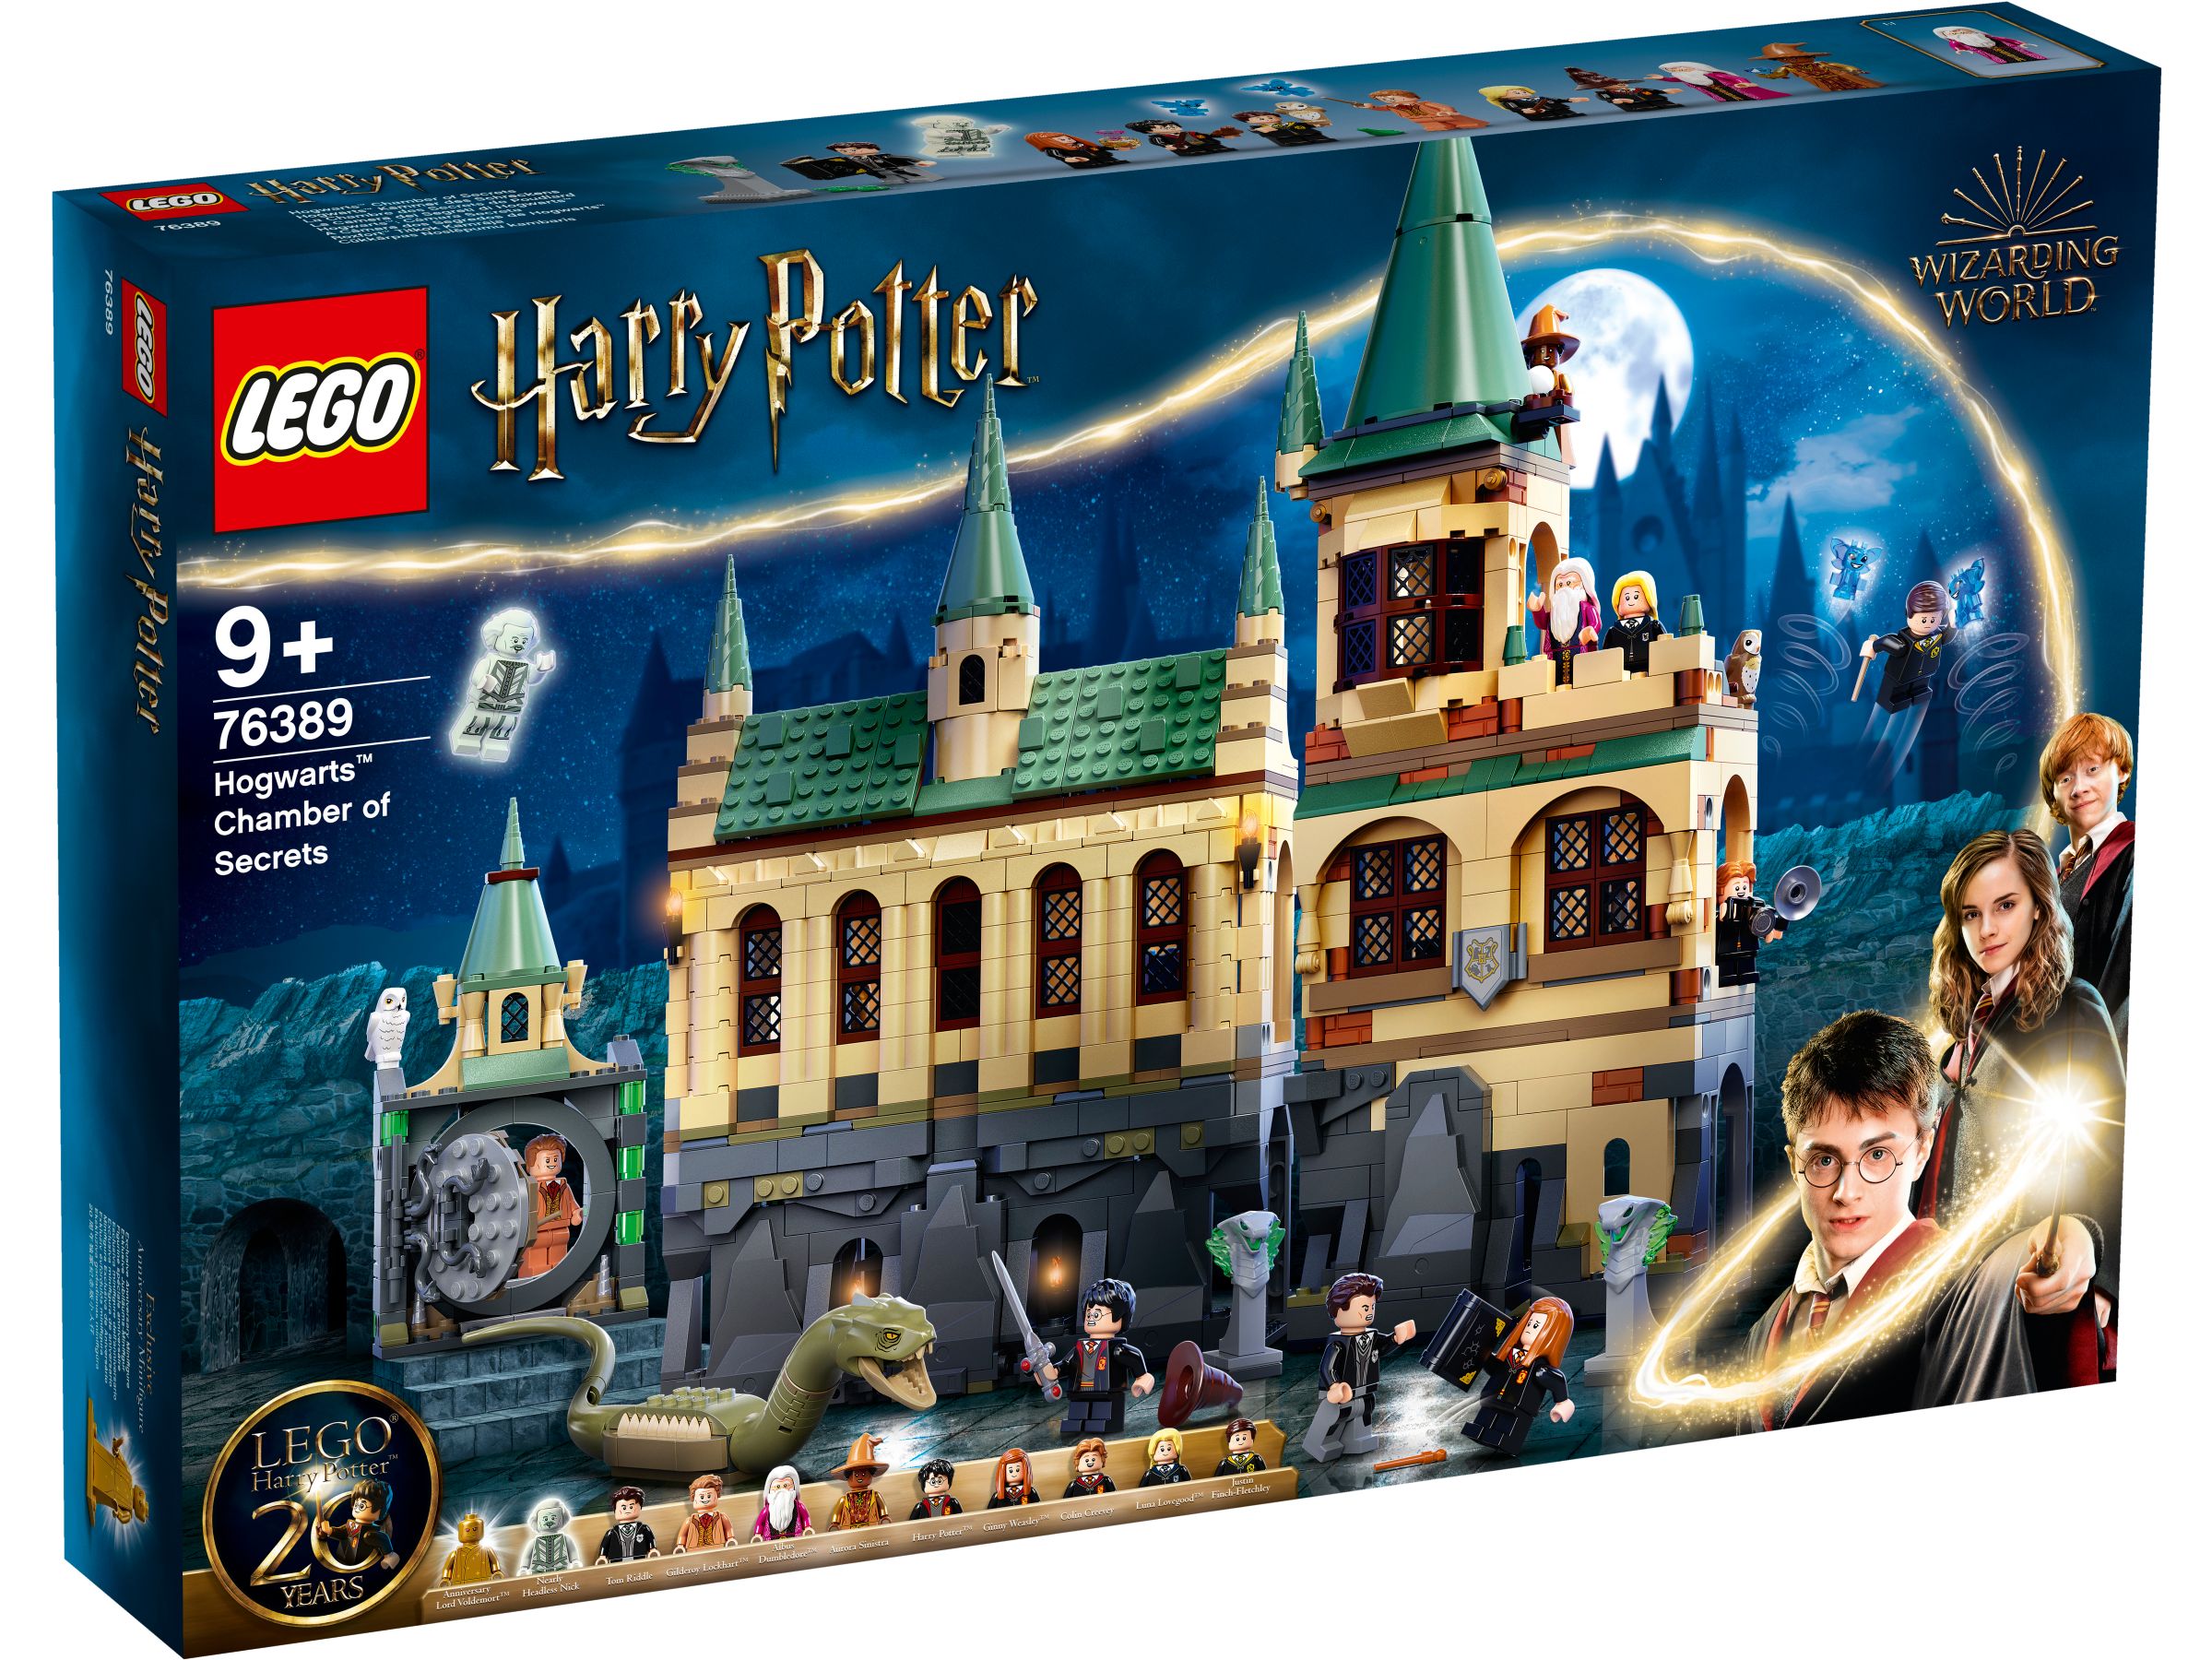 LEGO Harry Potter 76389 Hogwarts™ Kammer des Schreckens LEGO_76389_box1_v29.jpg